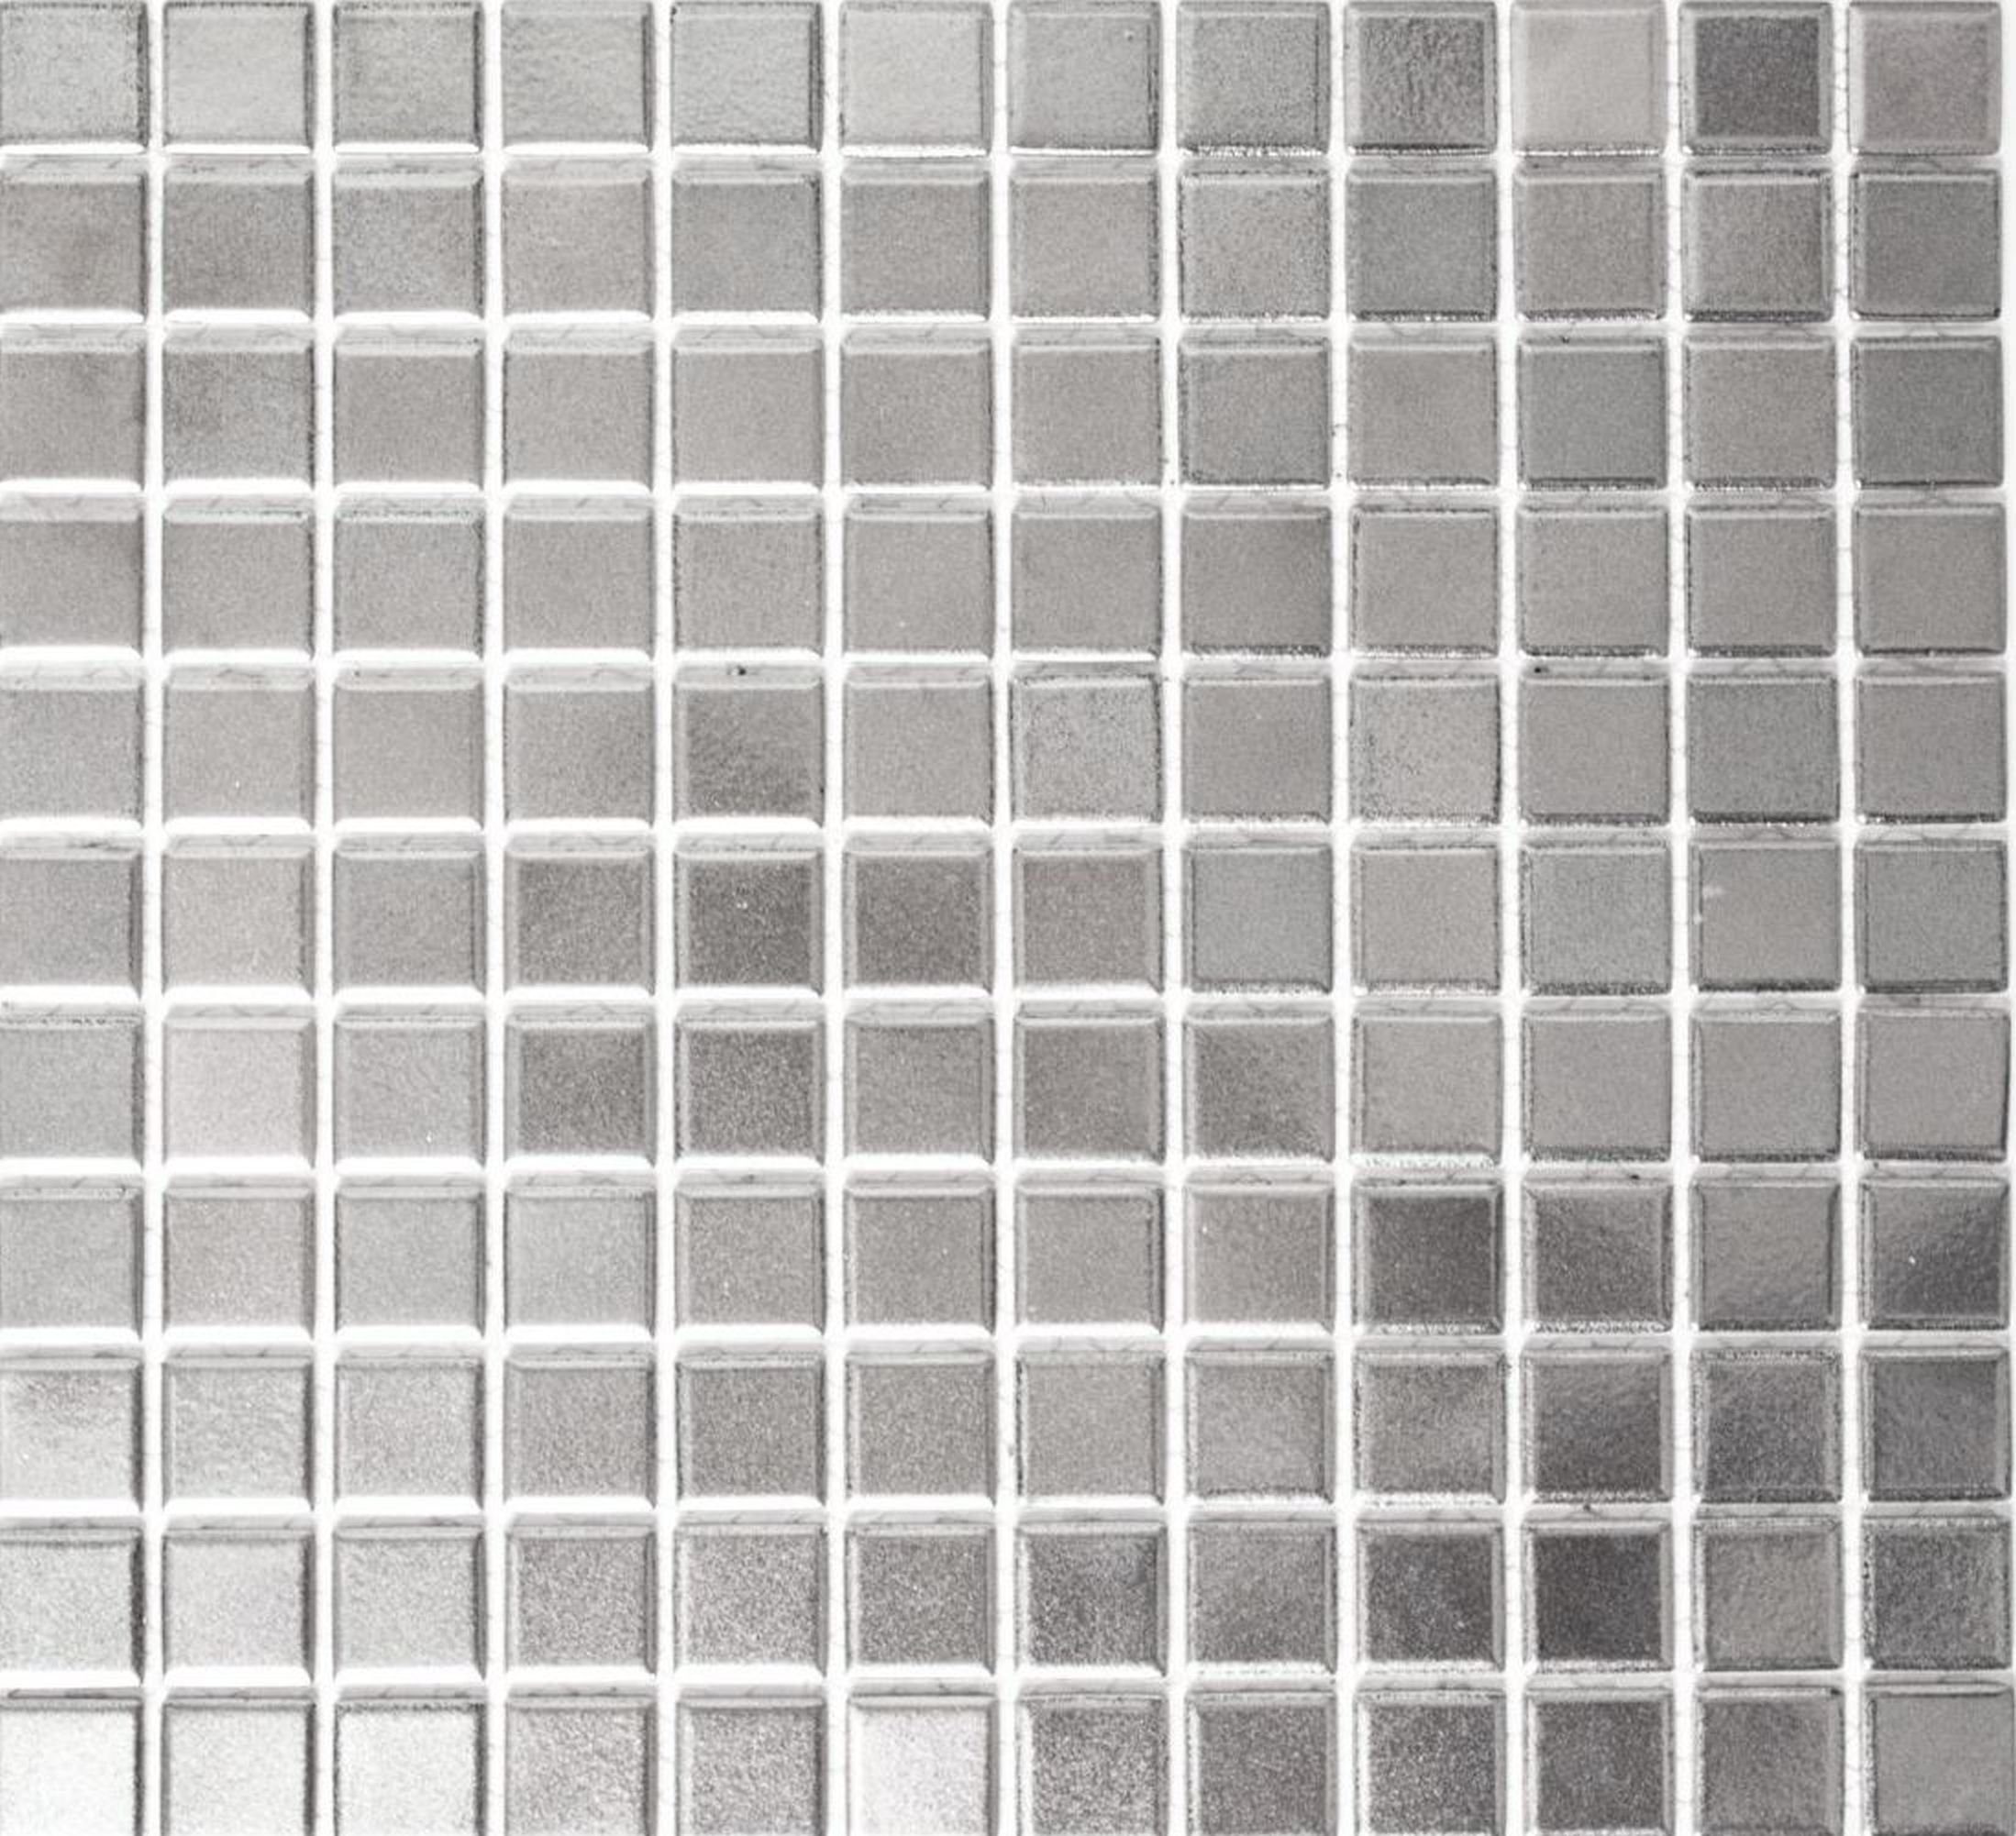 Mosani Mosaikfliesen Keramikmosaik Mosaikfliesen Silber Chrom Wand Küche | Fliesen